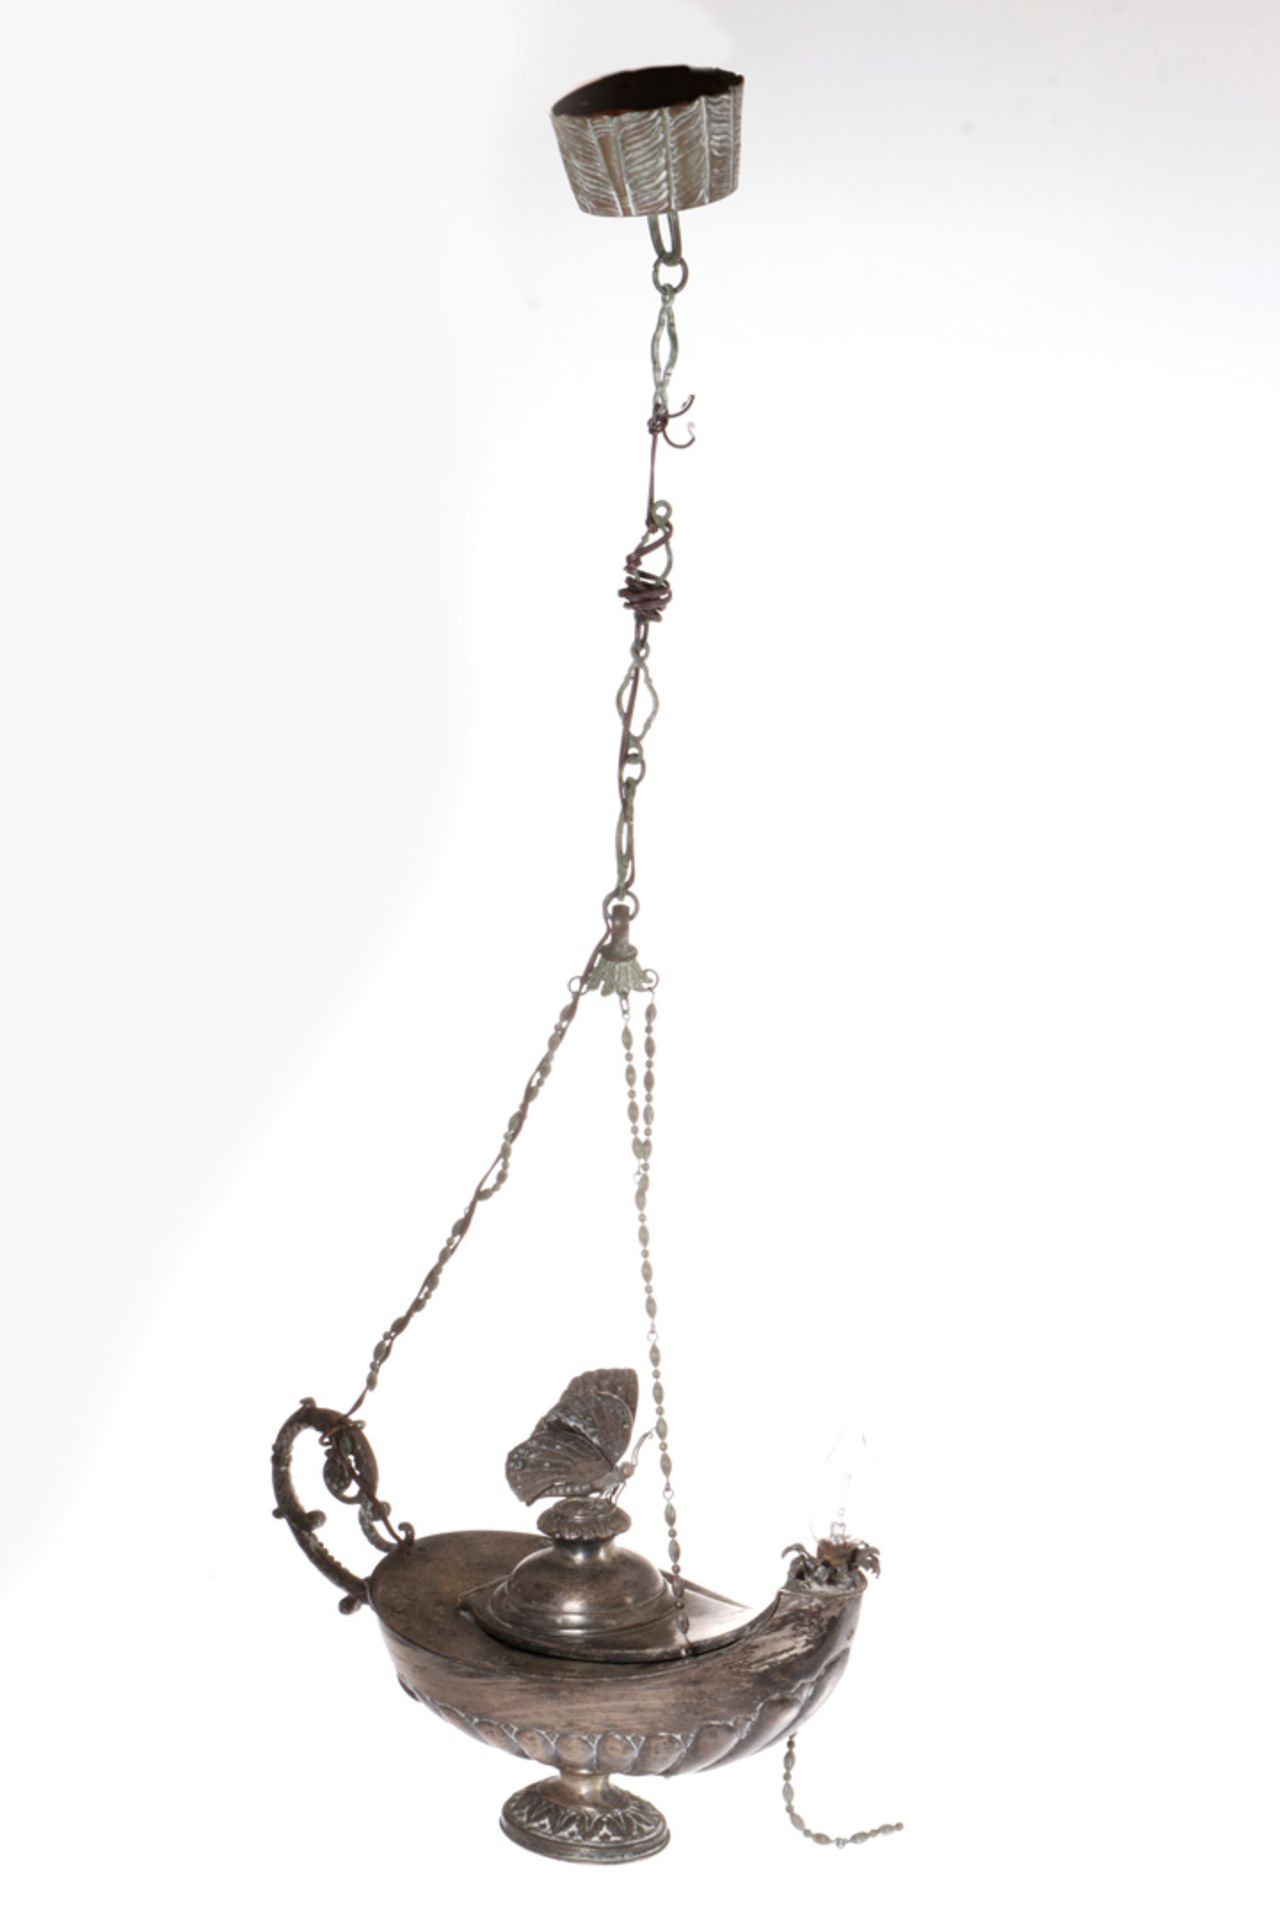 Öllampe, Guss, versilbert, 19. Jahrhundert, später elektrifiziert, Alterungsspuren, L 40 - Bild 2 aus 2